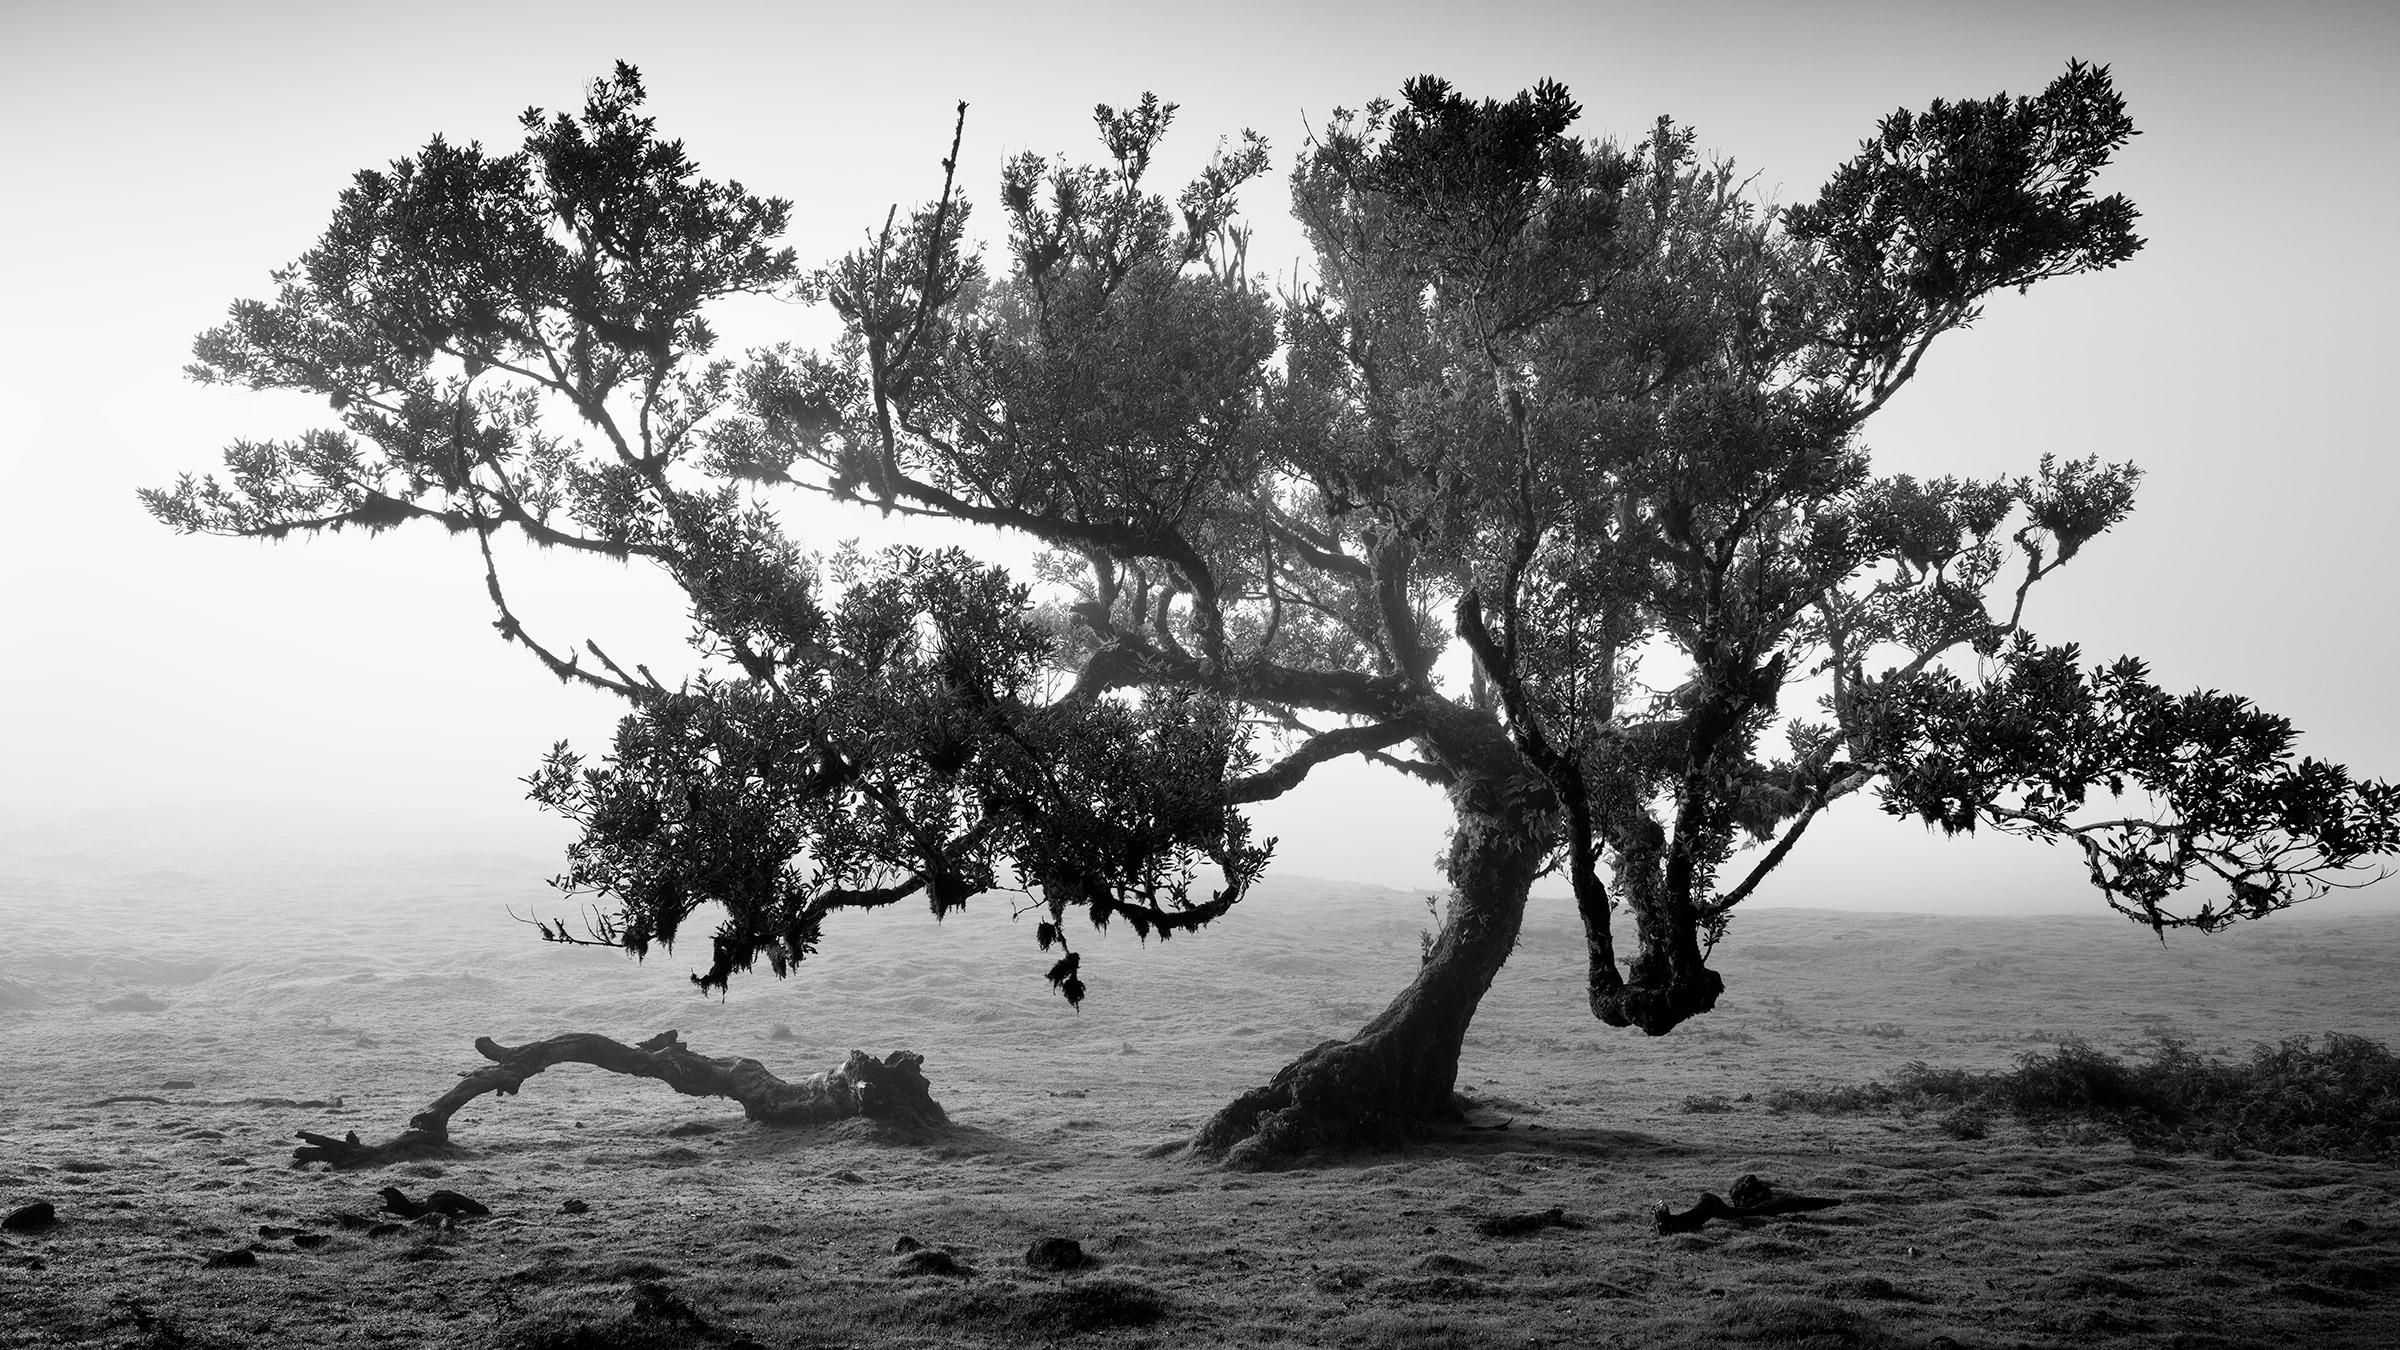 Landscape Photograph Gerald Berghammer - Ancienne forêt de Laurisilva, arbre ancien, Portugal, photographies de paysages d'art